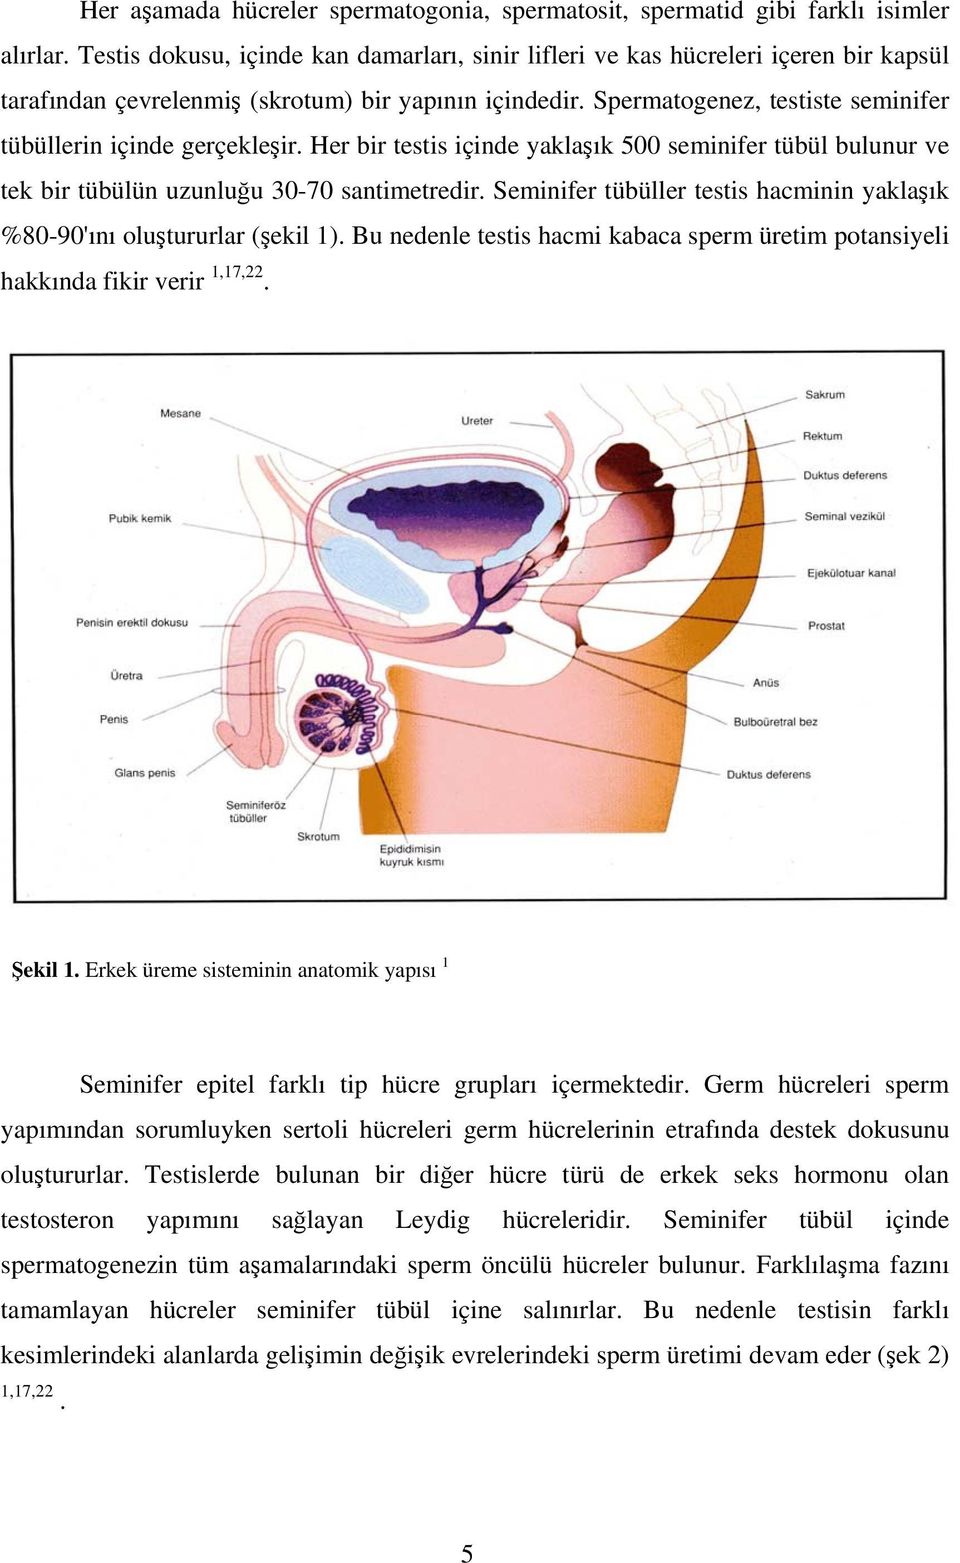 Spermatogenez, testiste seminifer tübüllerin içinde gerçekleşir. Her bir testis içinde yaklaşık 500 seminifer tübül bulunur ve tek bir tübülün uzunluğu 30-70 santimetredir.